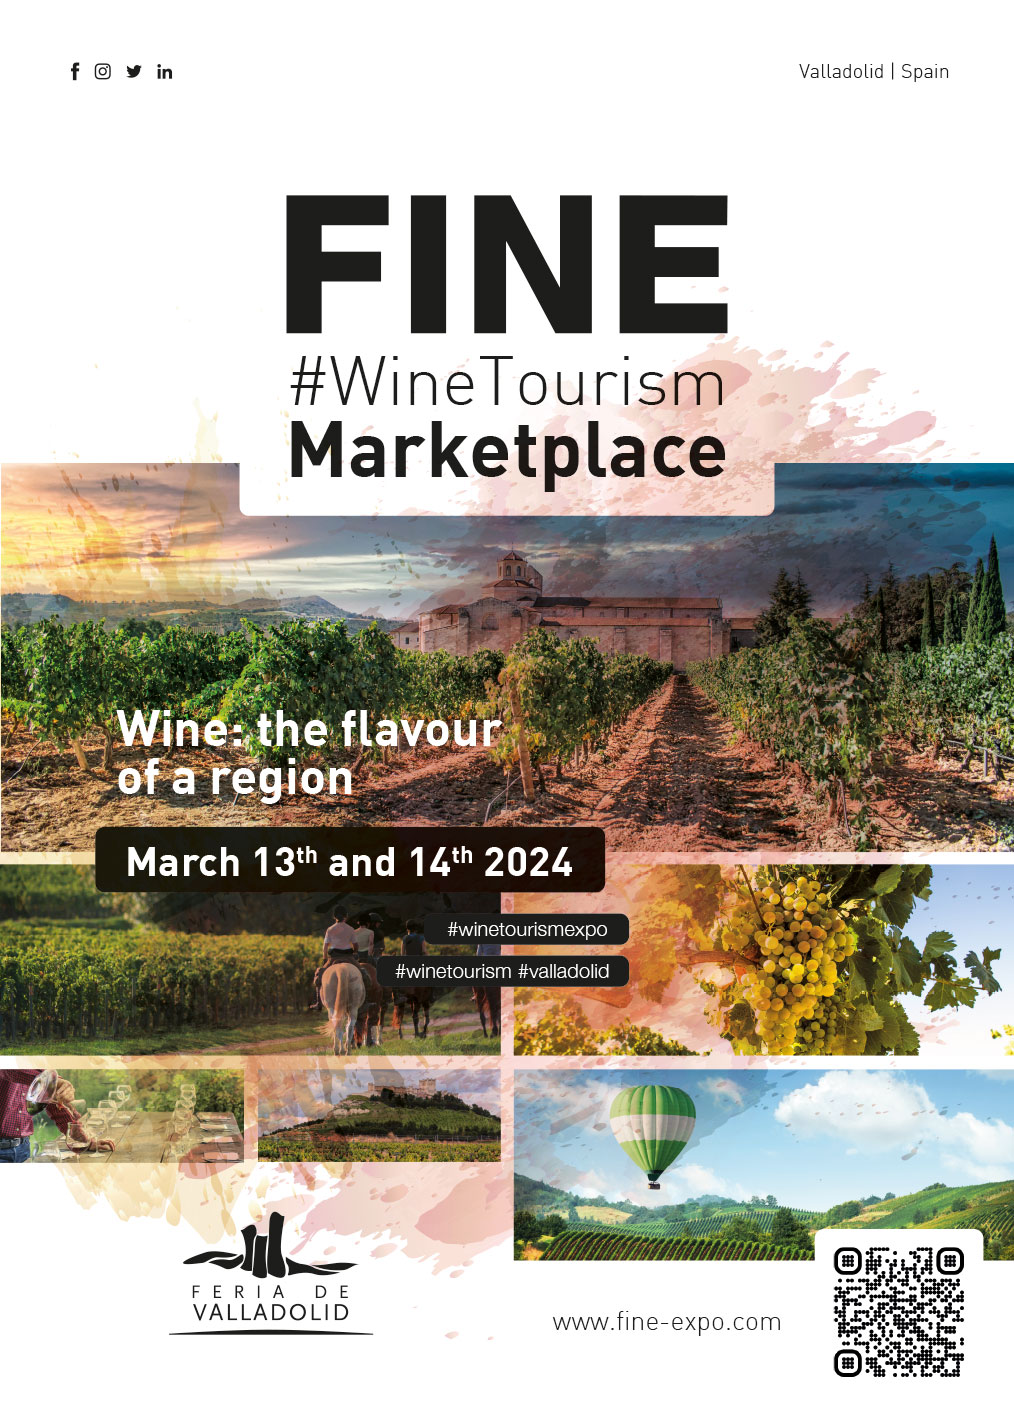 FINE#WineTourismMarketplace, la fiera internazionale dell’enoturismo a Valladolid (Spagna) dal 13 al 14 marzo 2024.